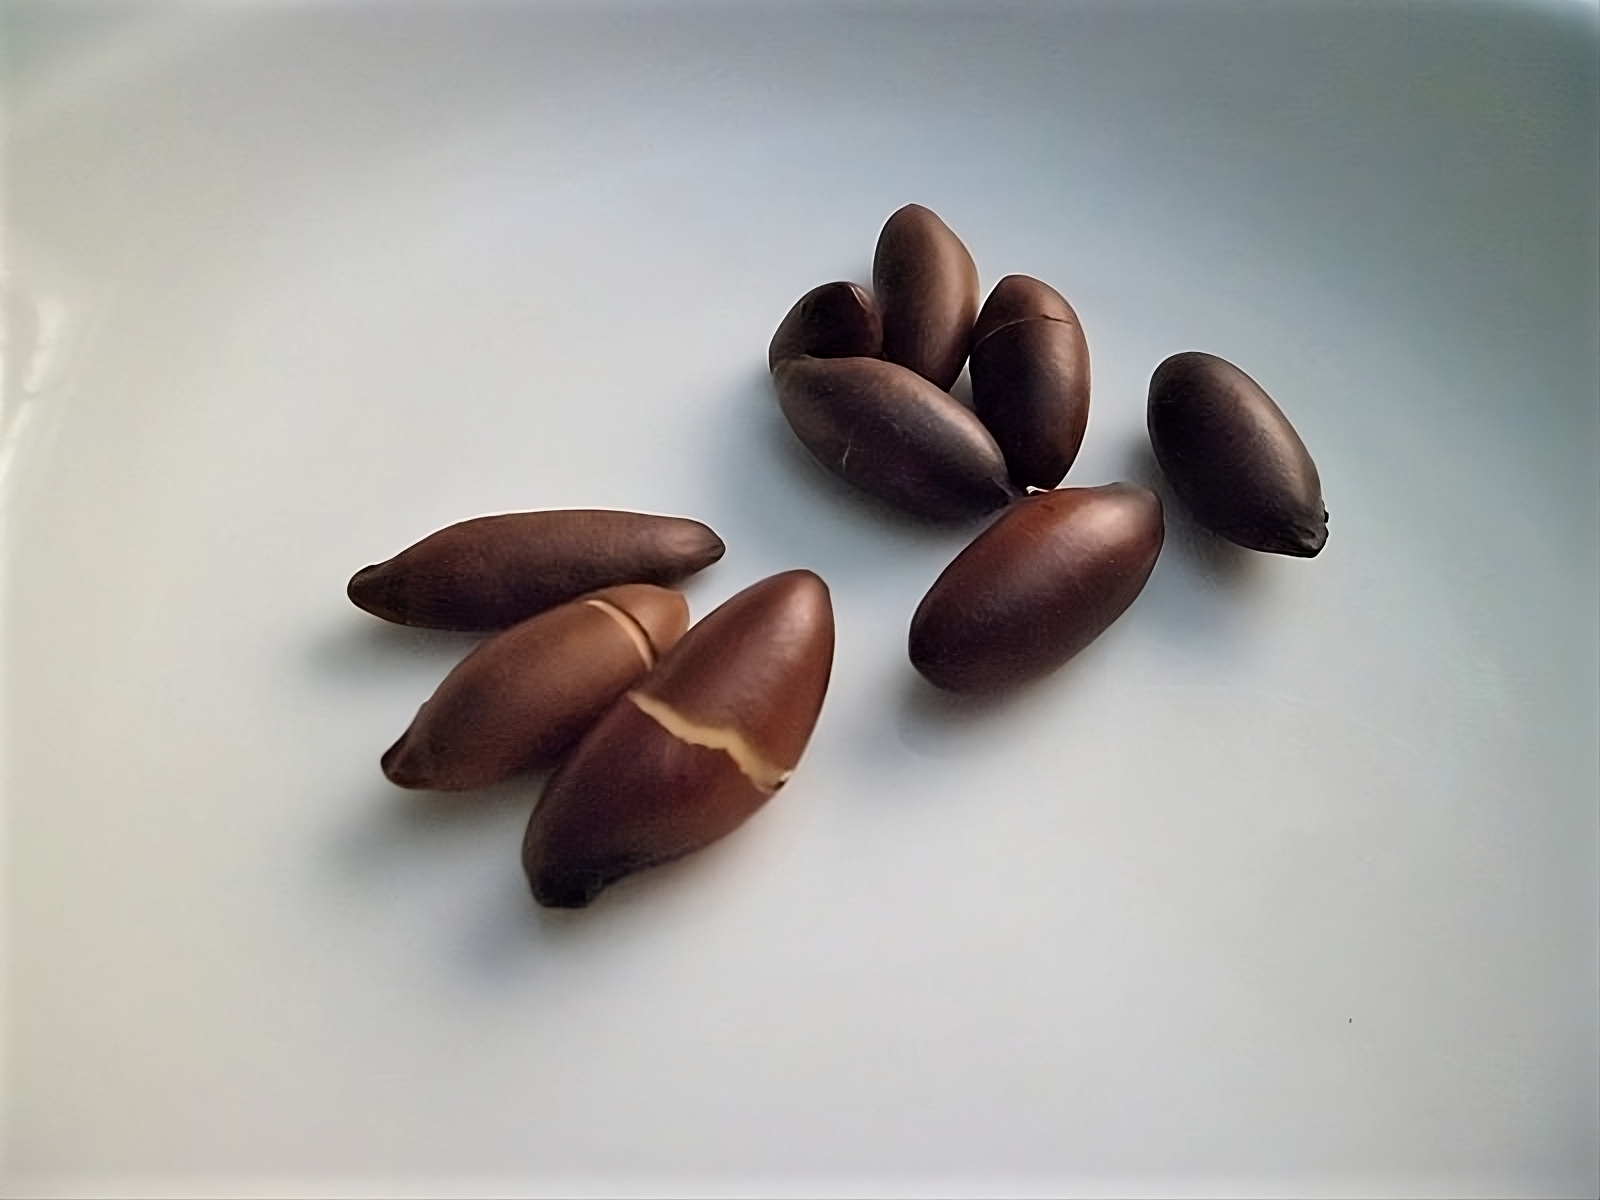 Nine baru nuts clustered together